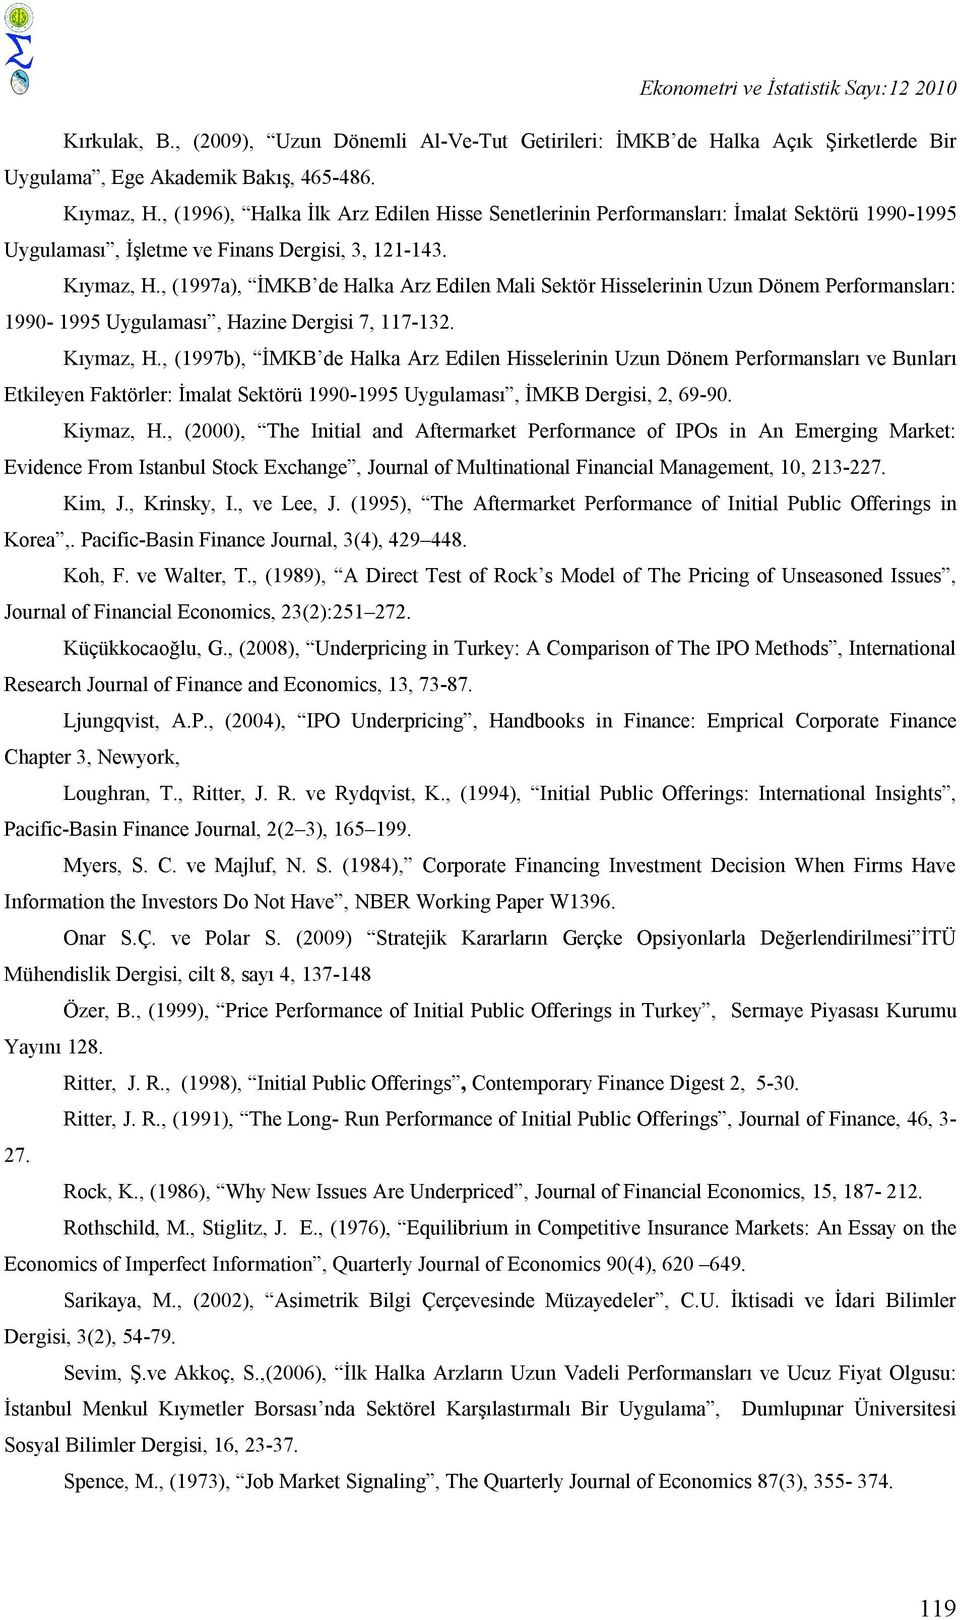 , (1997a), İMKB de Halka Arz Edilen Mali Sektör Hisselerinin Uzun Dönem Performansları: 1990-1995 Uygulaması, Hazine Dergisi 7, 117-132. Kıymaz, H.